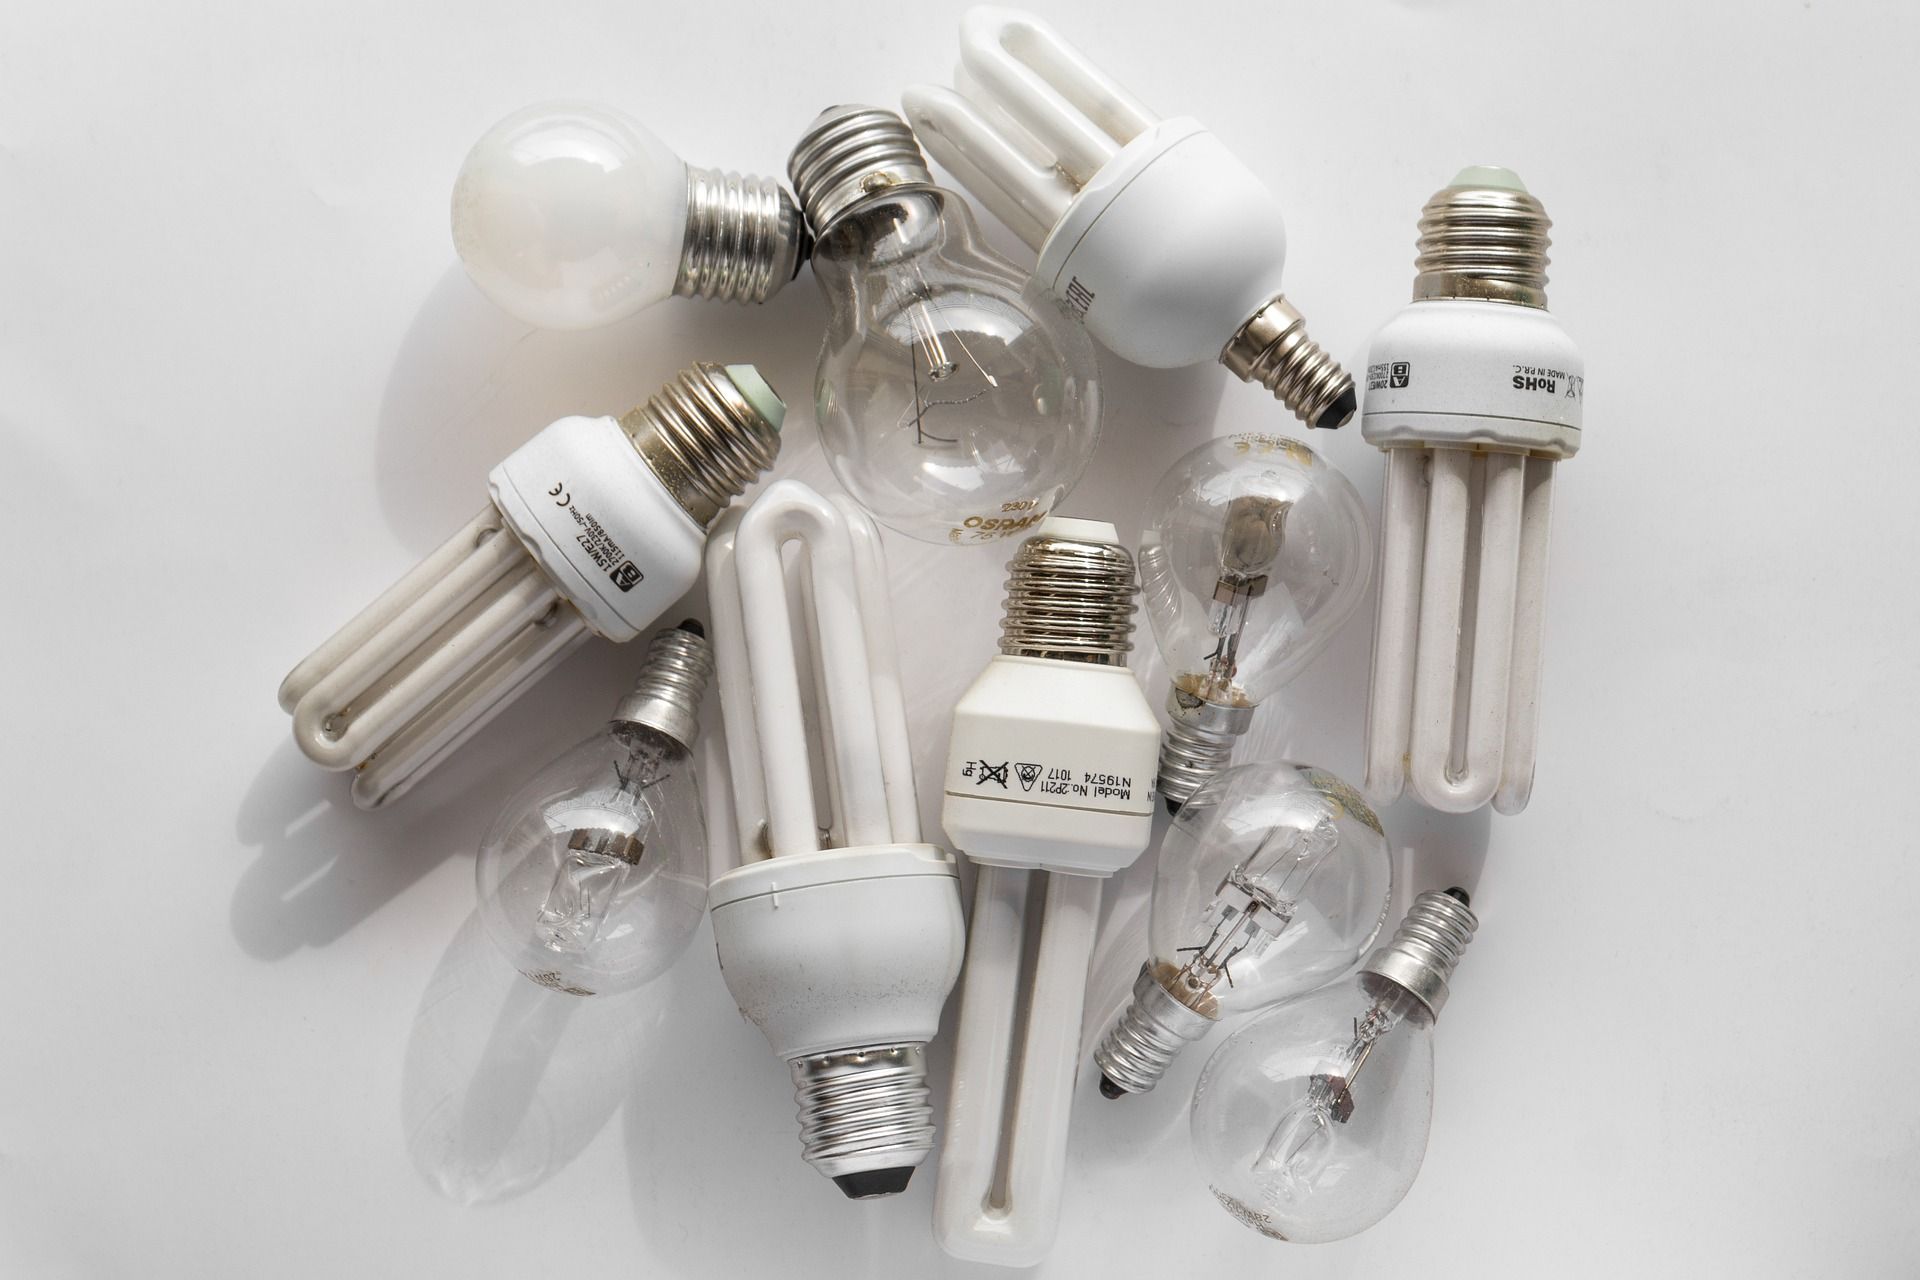 Old light bulbs